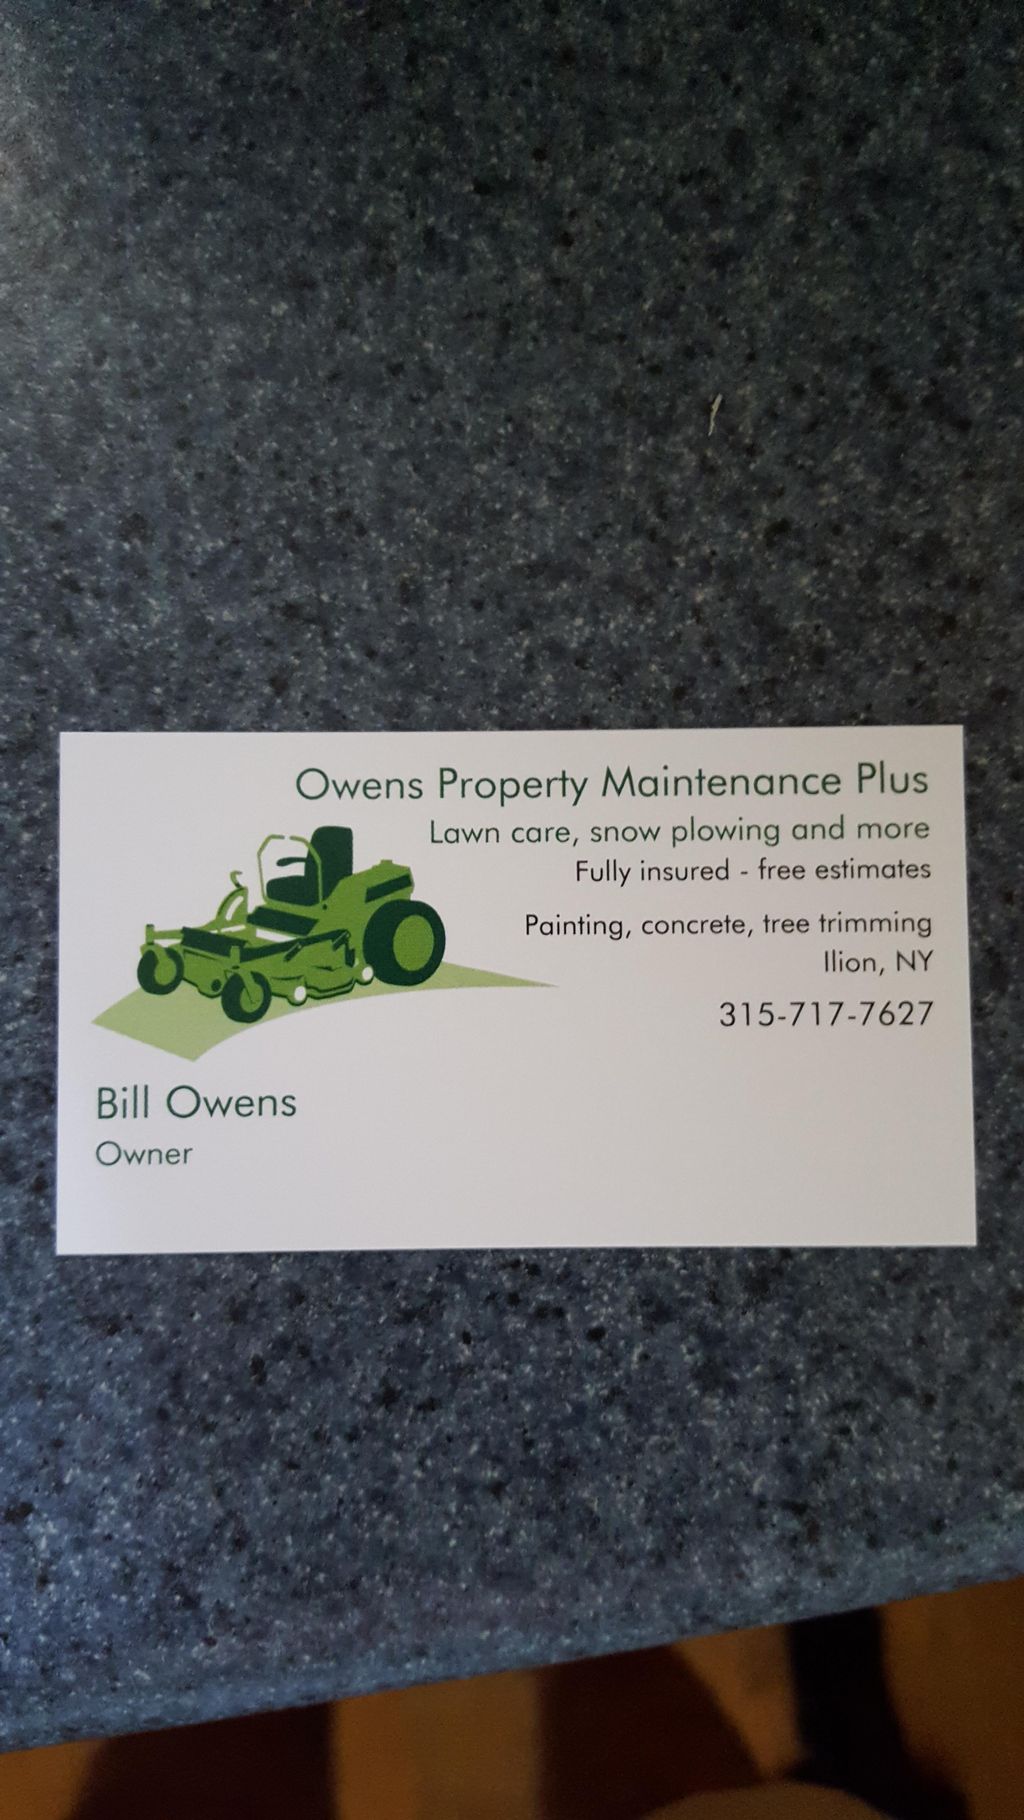 Owens Property Maintenance Plus